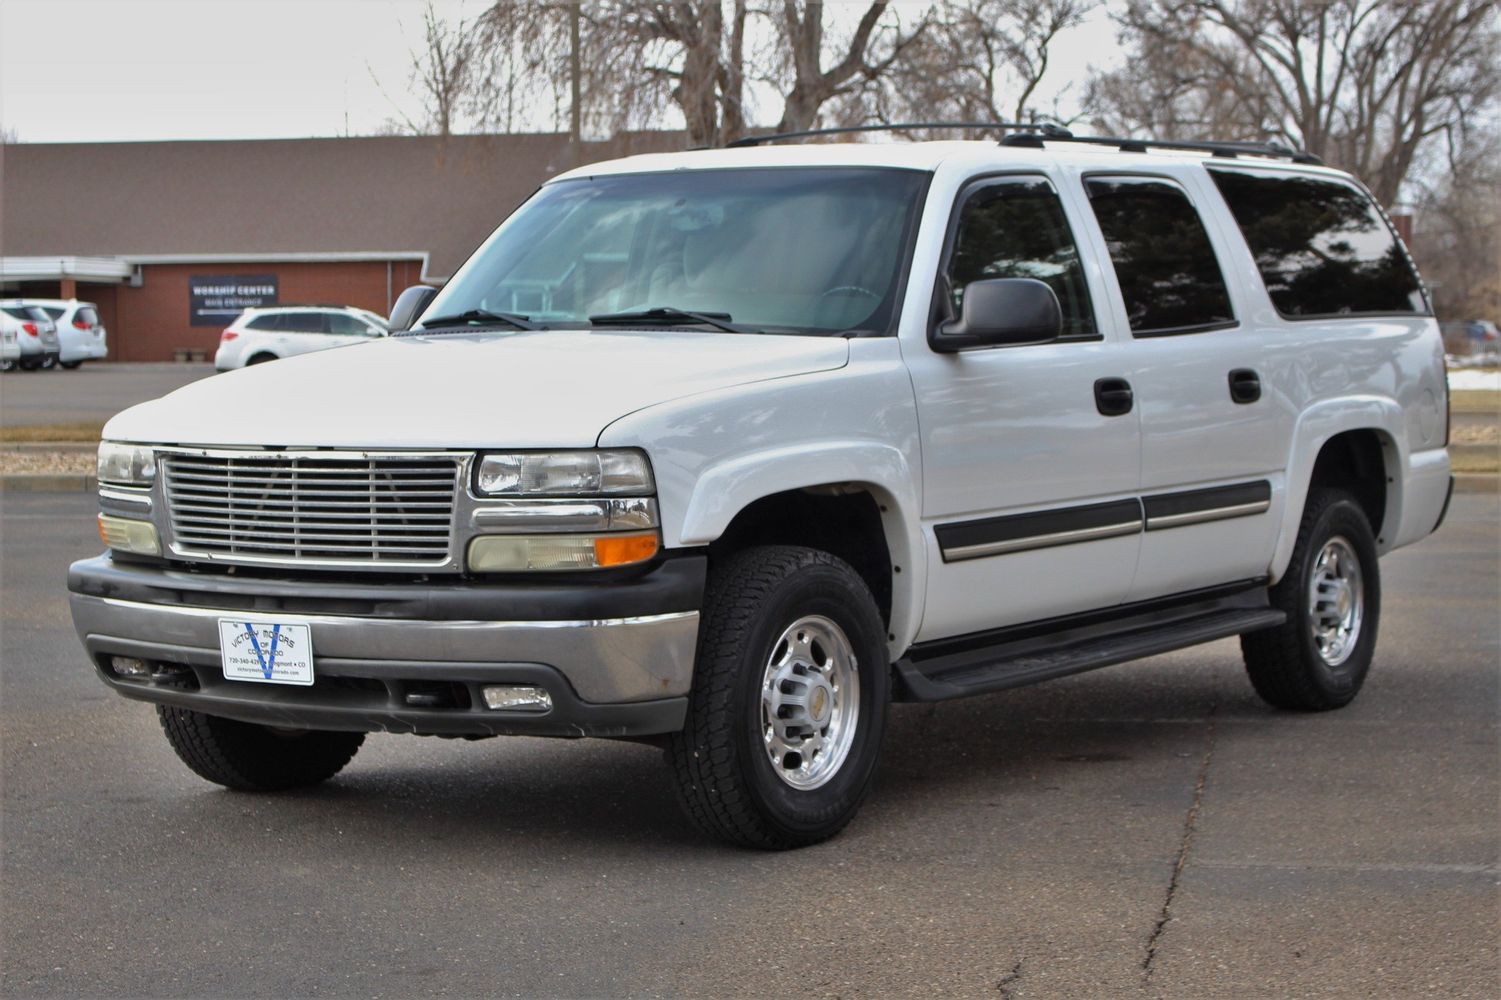 2004 Chevrolet Suburban 2500 LT | Victory Motors of Colorado 2004 Suburban 2500 8.1 Towing Capacity